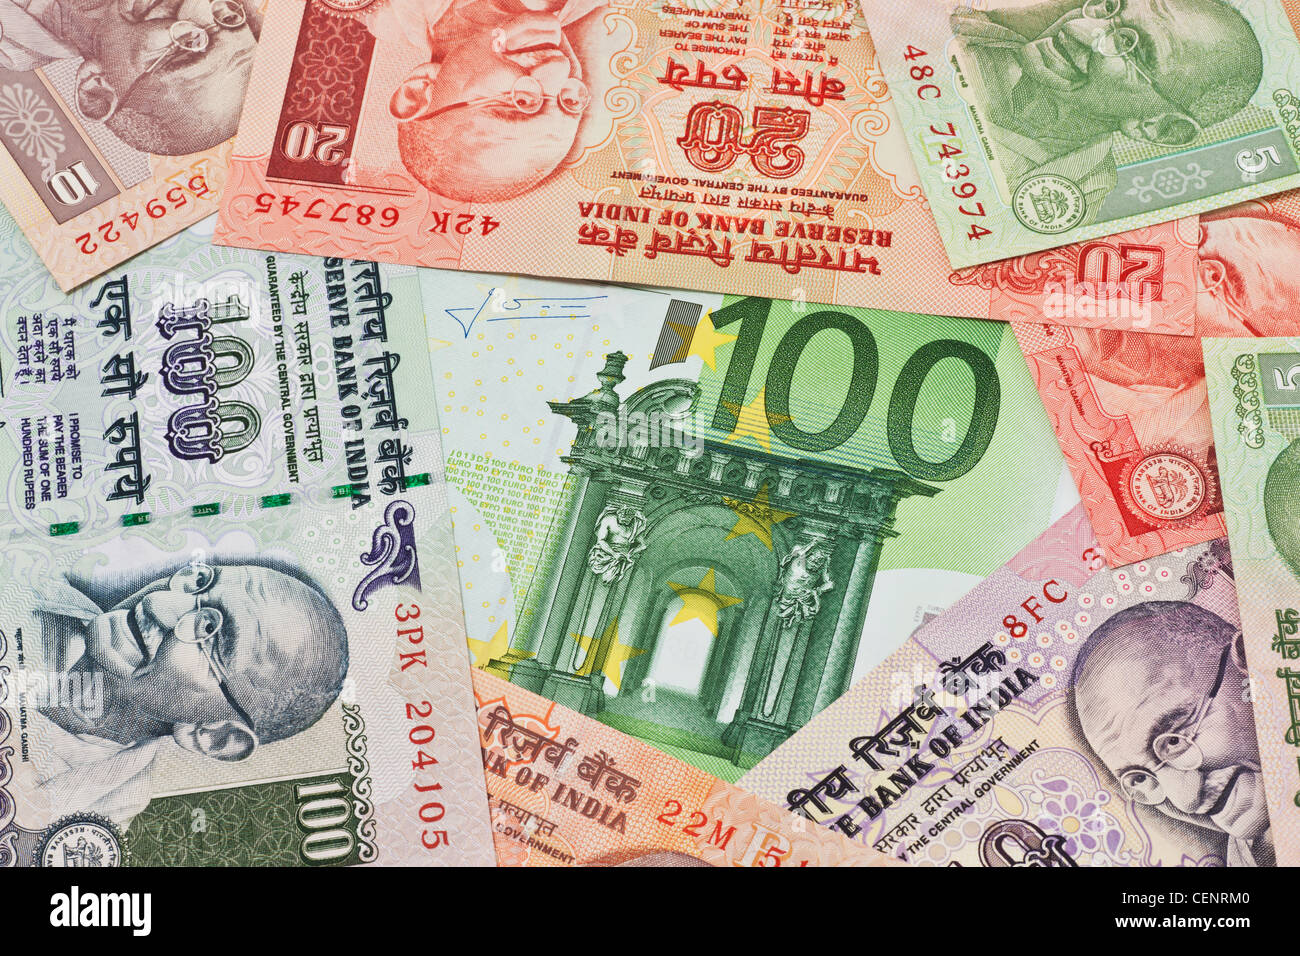 Molti rupia indiana fatture con il ritratto del Mahatma Gandhi affiancati. Al centro si trova un Euro 100 bill Foto Stock